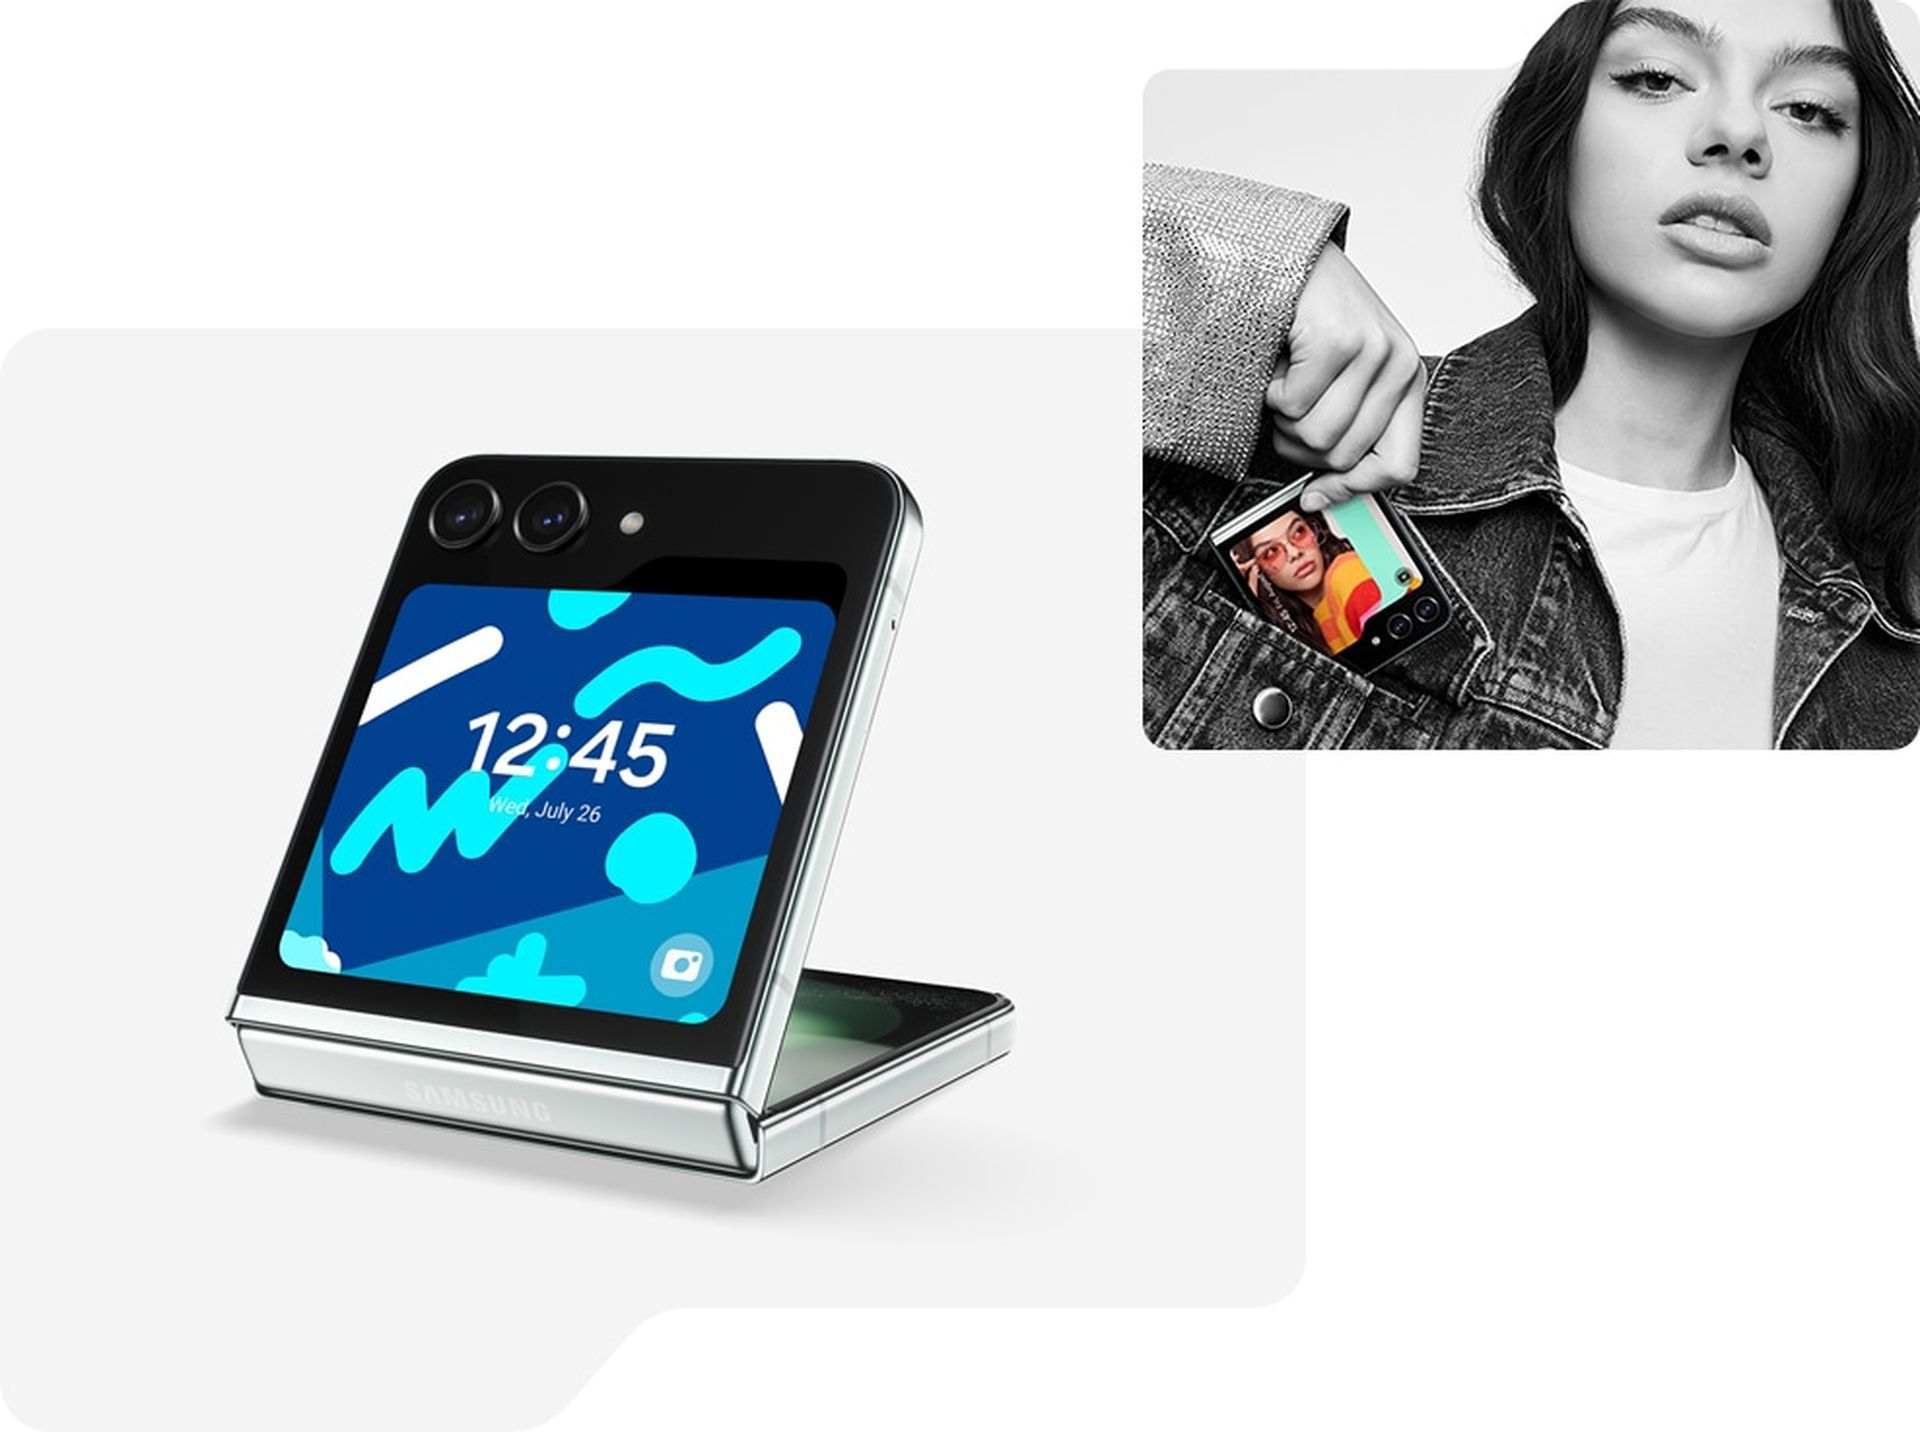 Samsung Galaxy Z Flip 5: